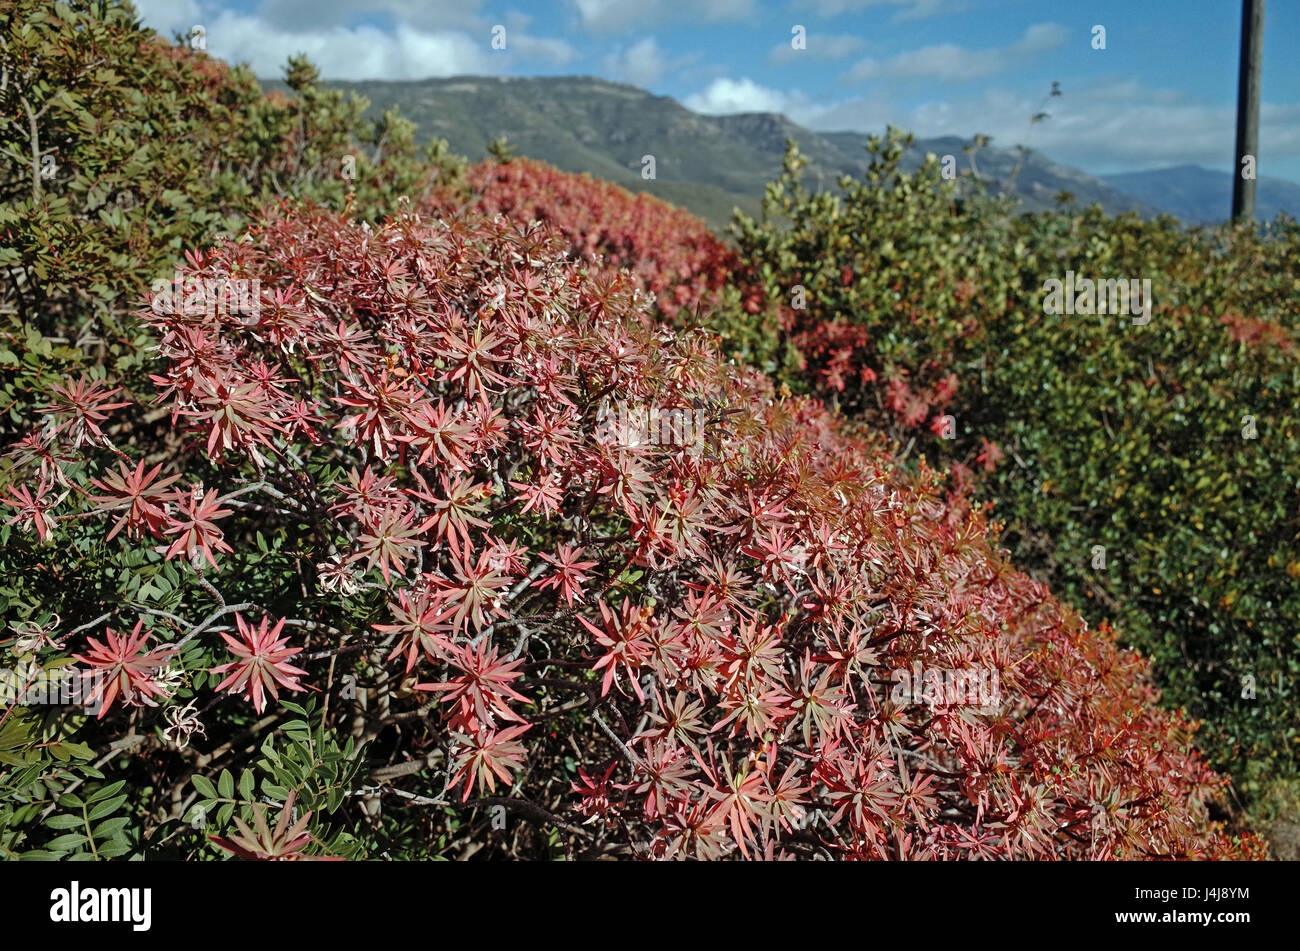 Woody spurge (euphorbia dendroides) near Alghero, Sardinia Stock Photo